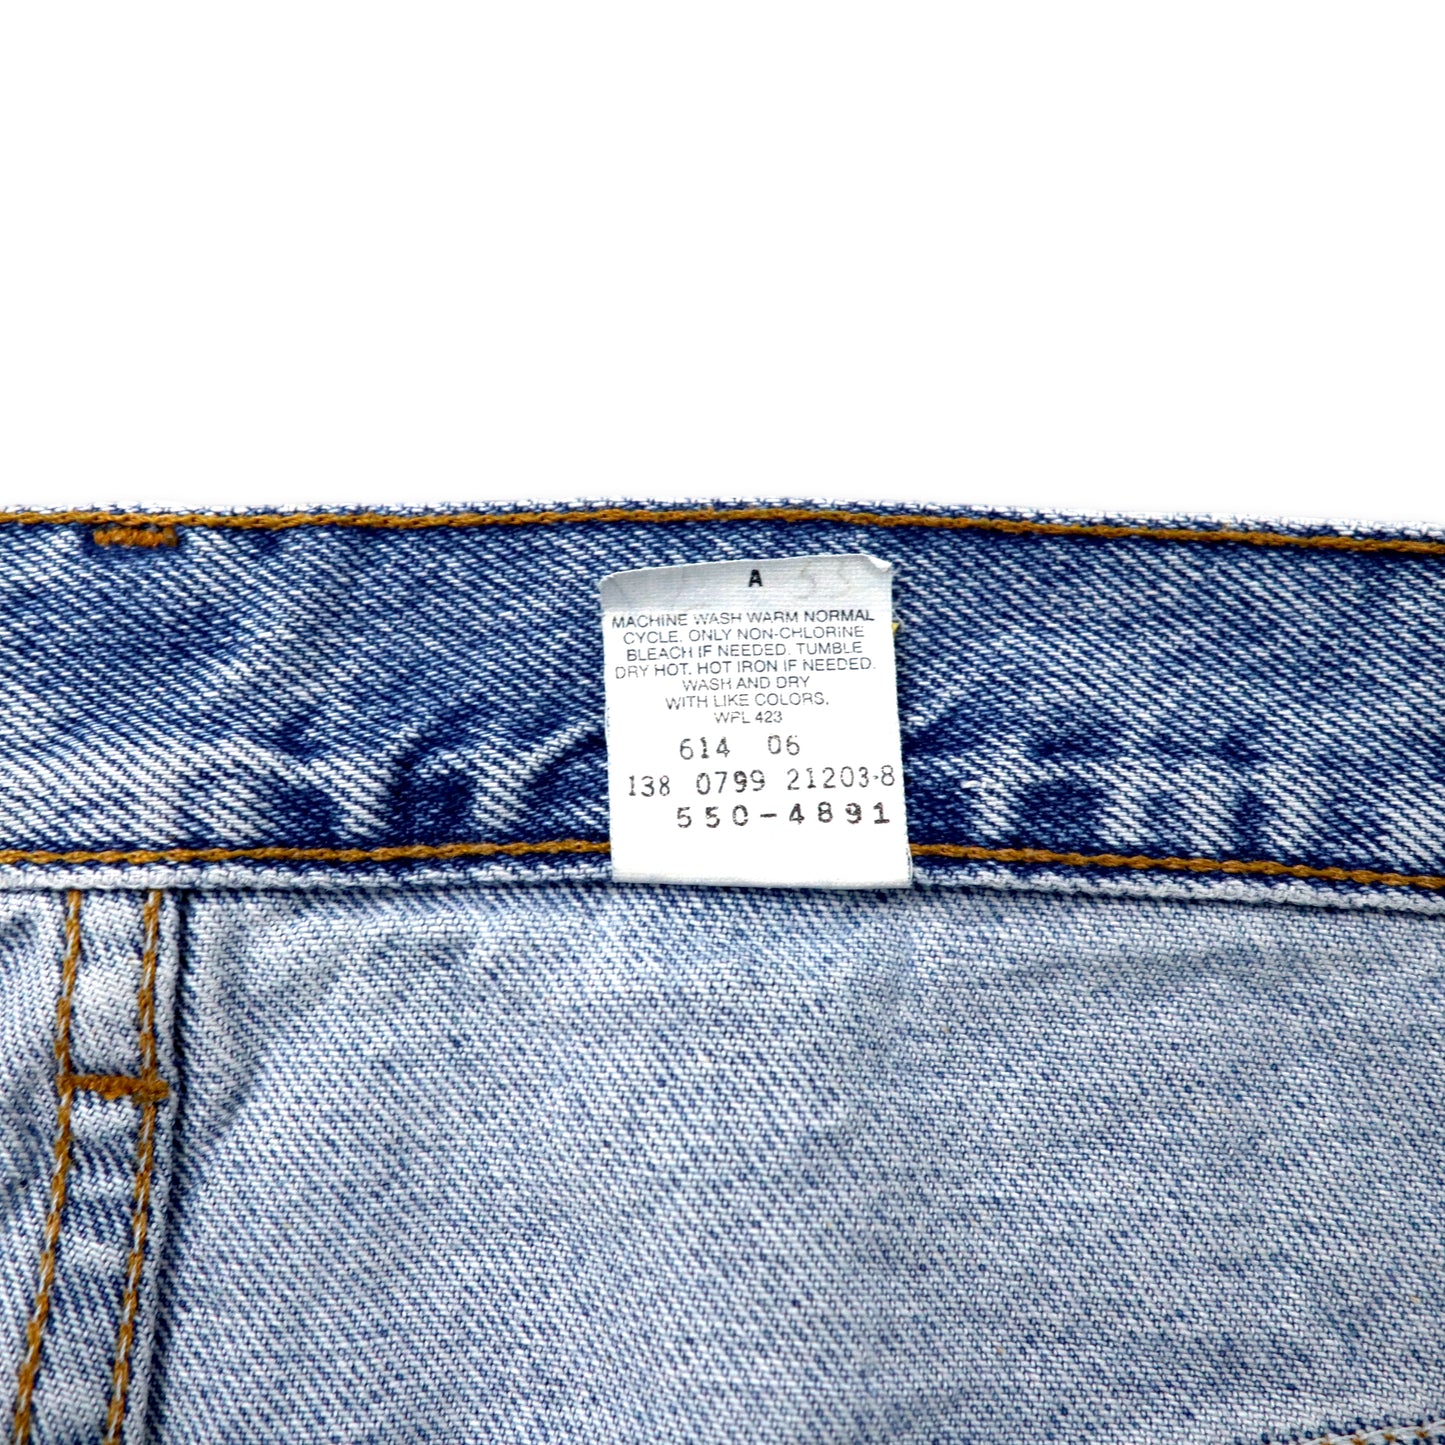 Levi's 90年代 550 リラックスフィット テーパード デニムパンツ 40 ブルー 550-4891 Relaxed Tapered Leg Jeans